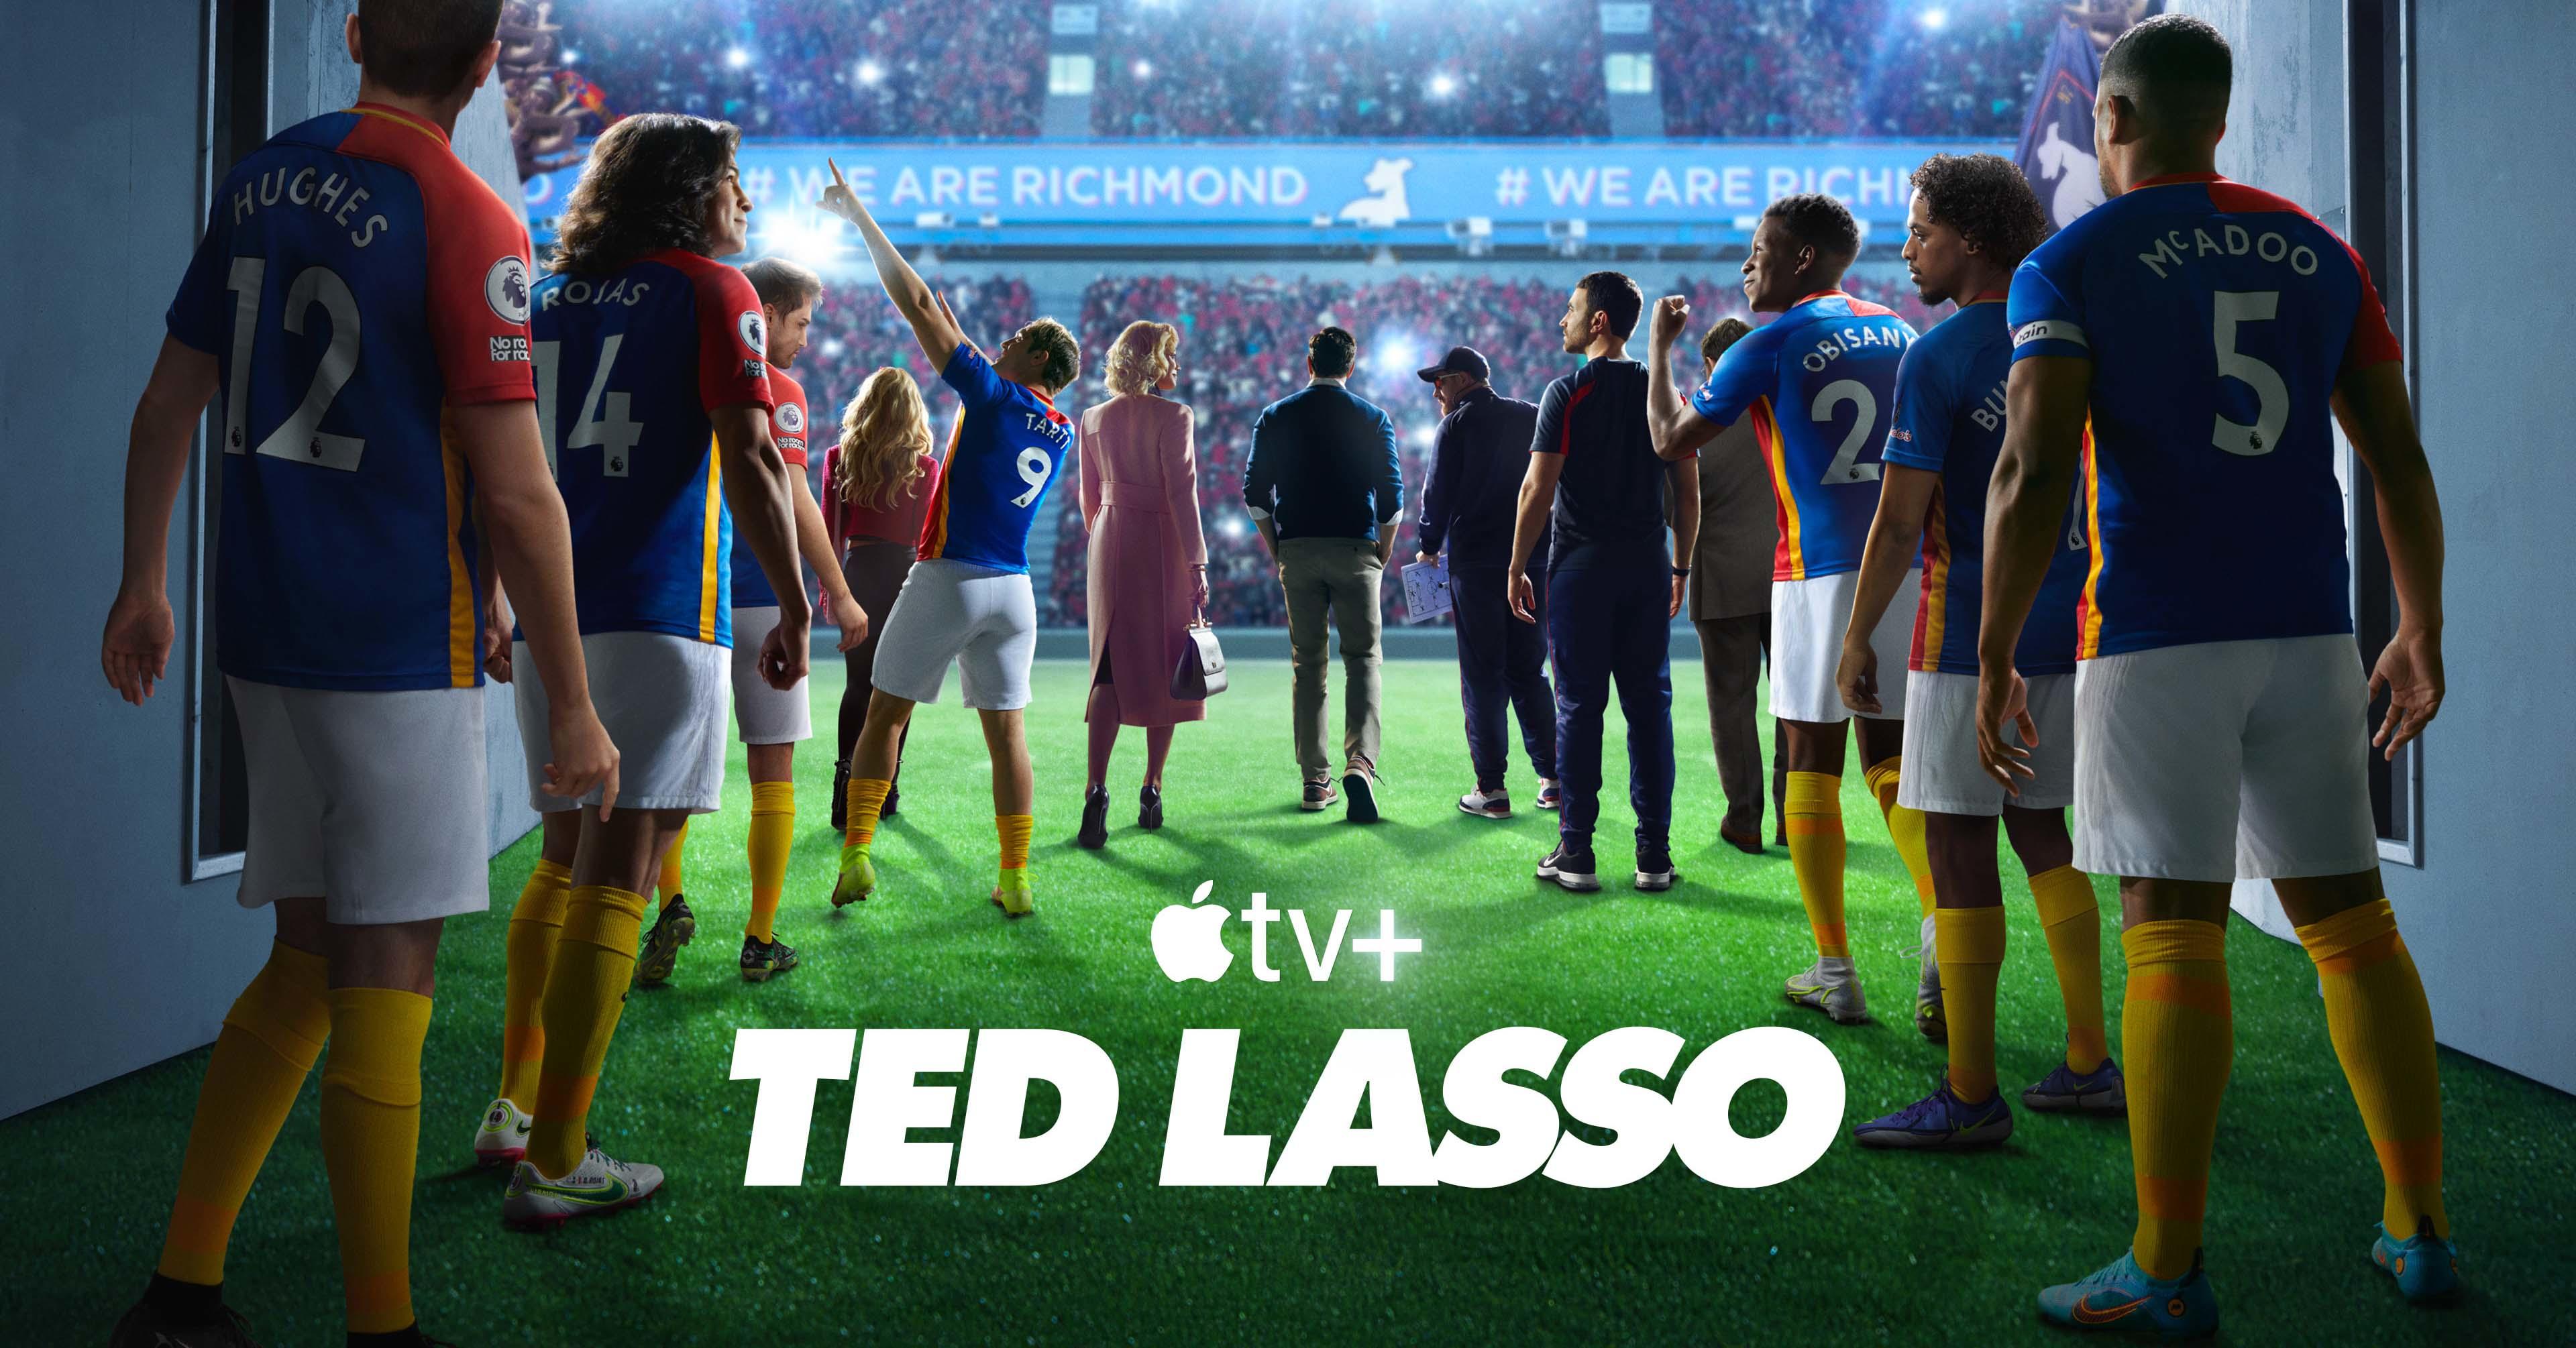 ted-lasso-apple-tv-plus-season-3-header